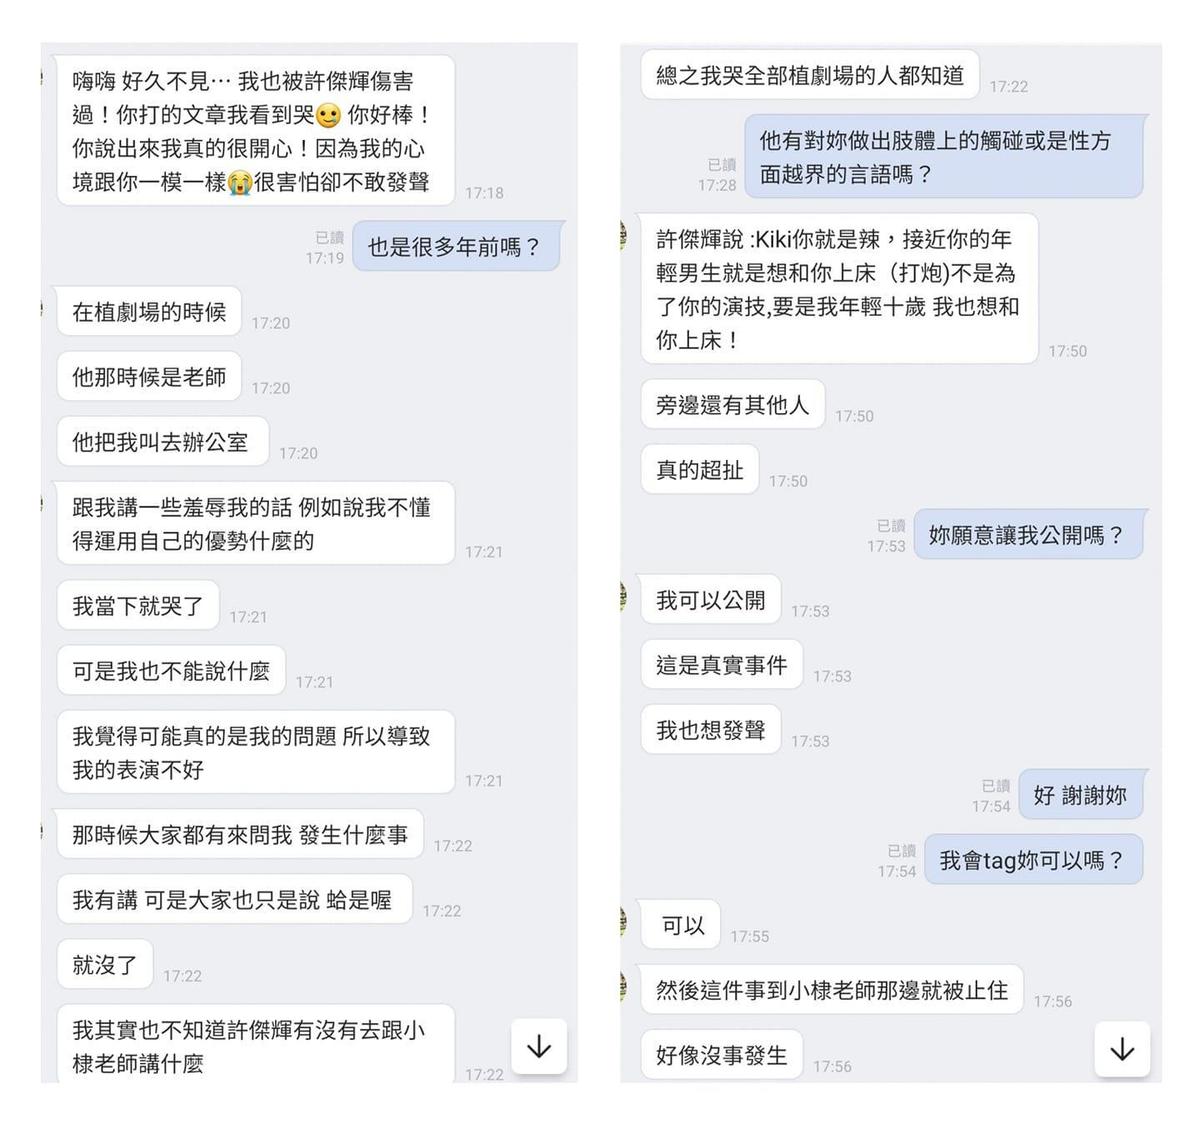 許傑輝爆性騷植劇場女學員…王小棣被質疑包庇回應了